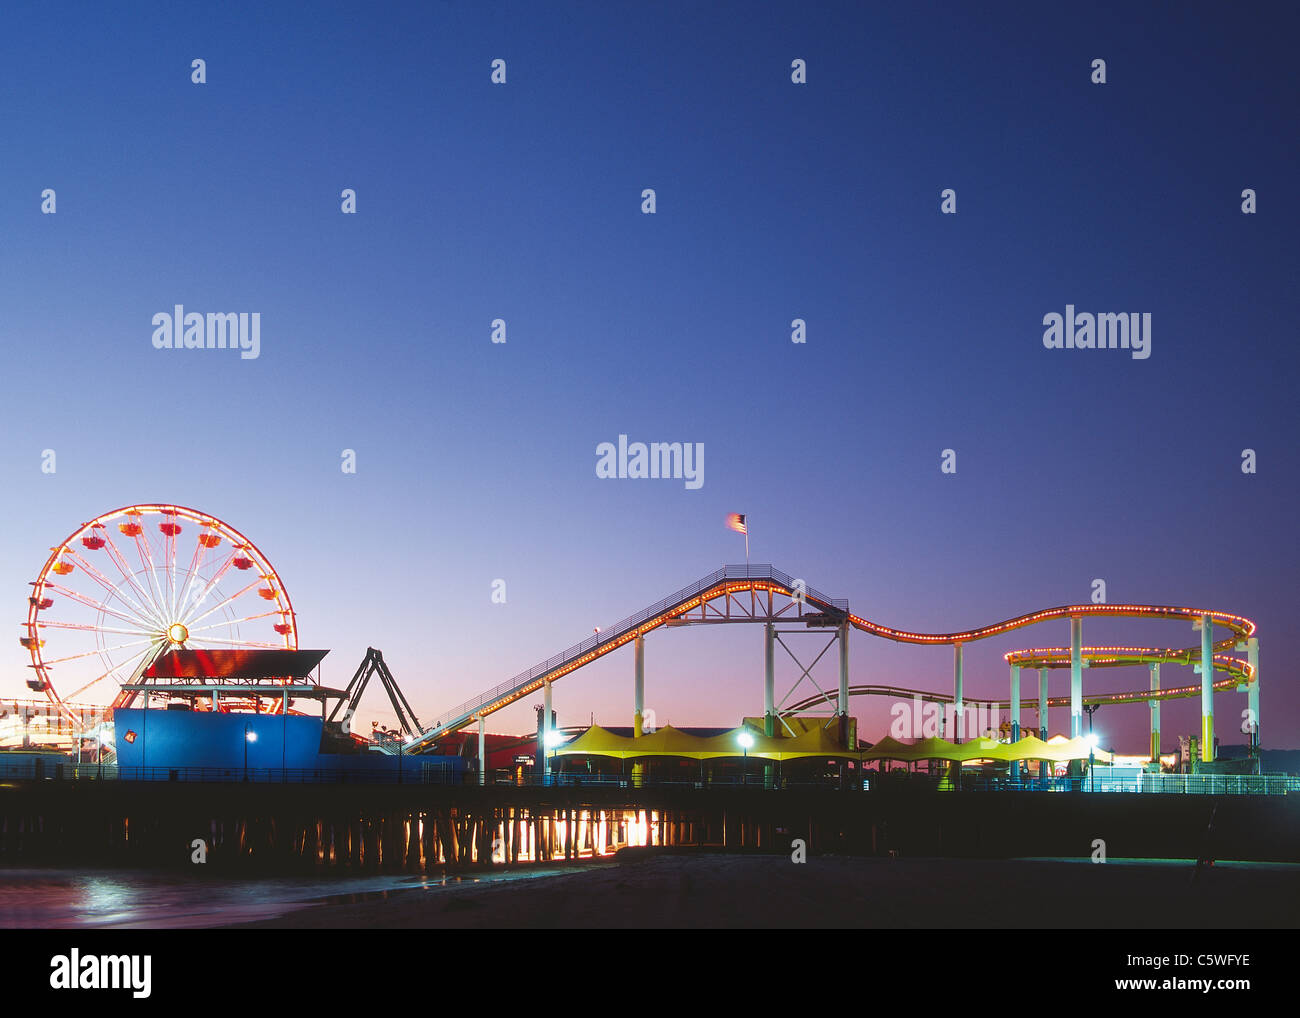 USA, Californie, Los Angeles, Vue du parc d'attractions sur la plage au soir Banque D'Images